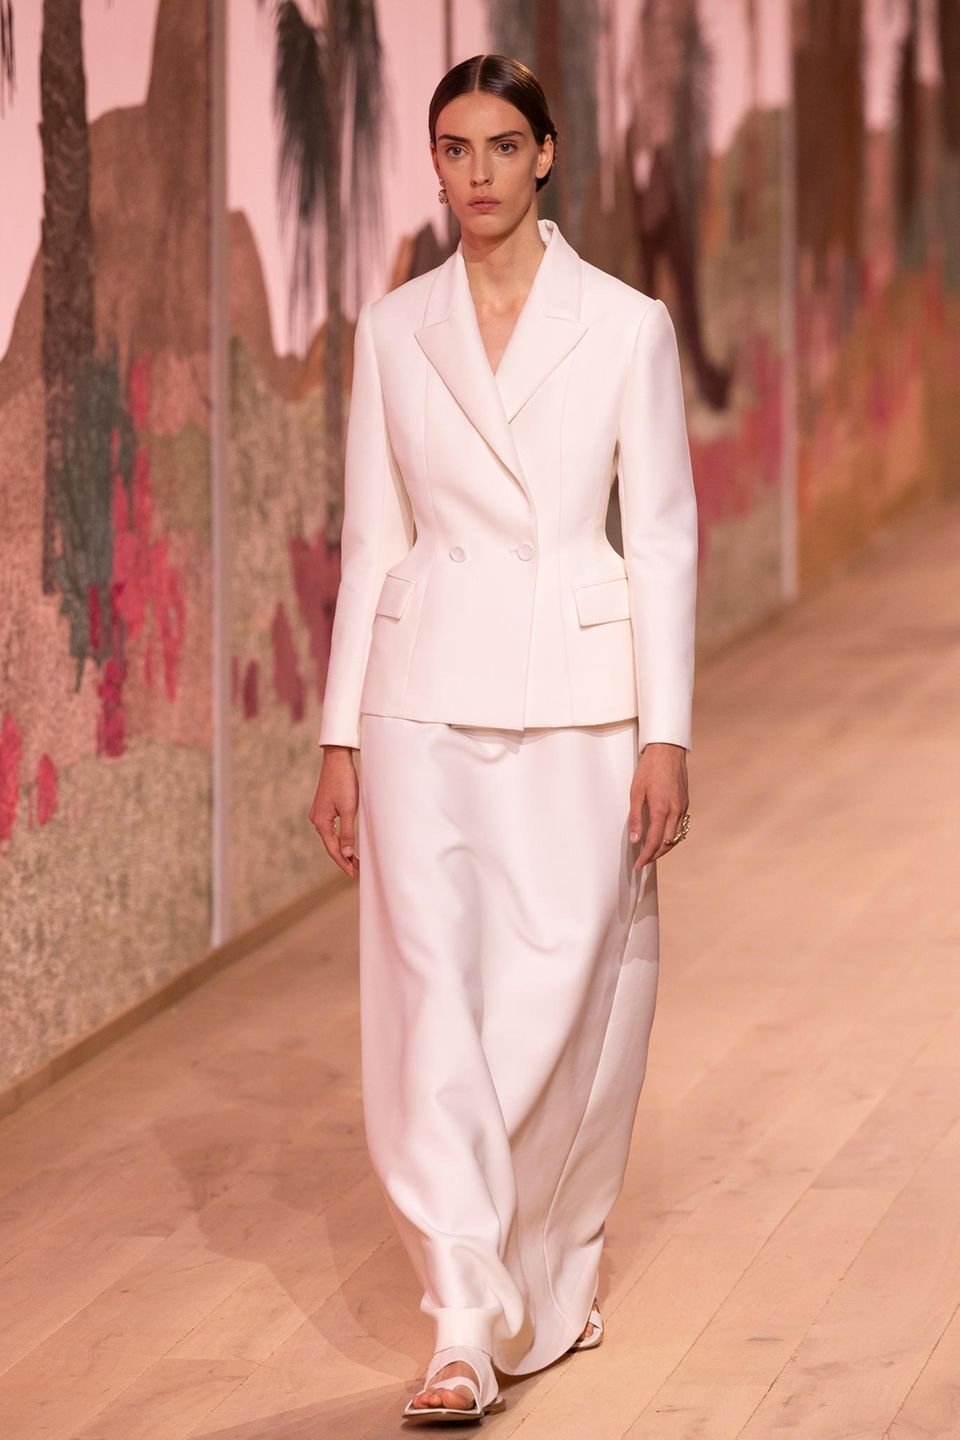 Fließende Stoffe, akzentuierte Schnitte: Bei der Haute Couture Show von Dior beherrschen klassische Designs den Runway.